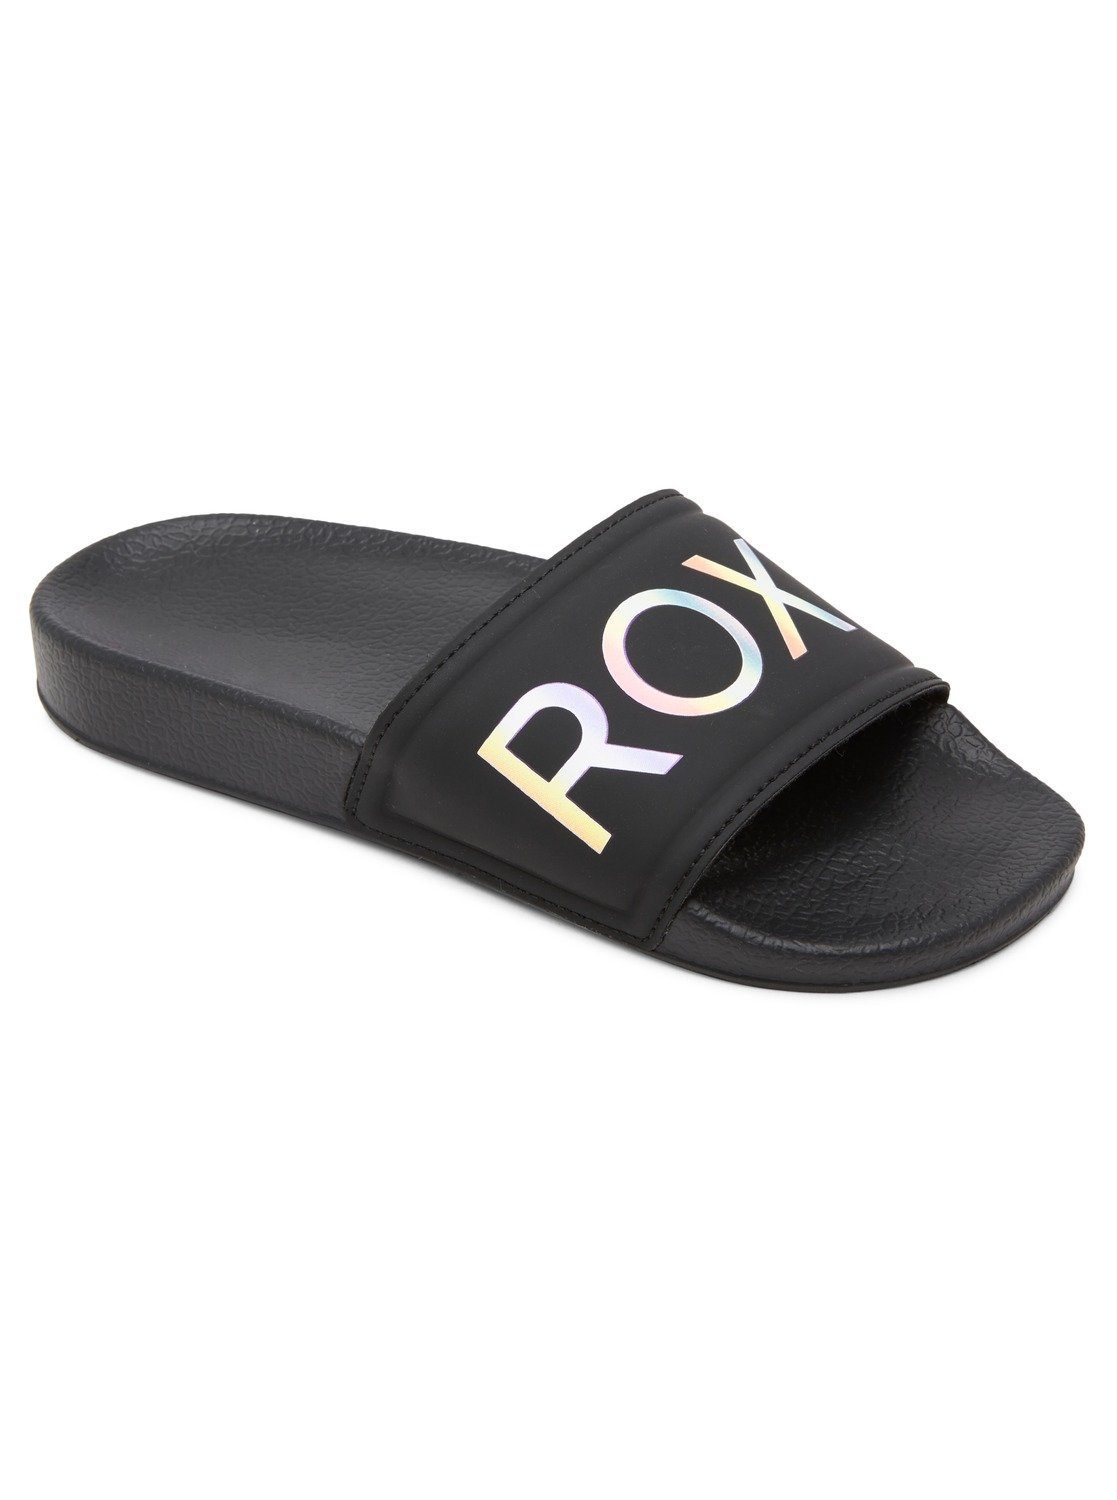 Roxy Slippy Sandale